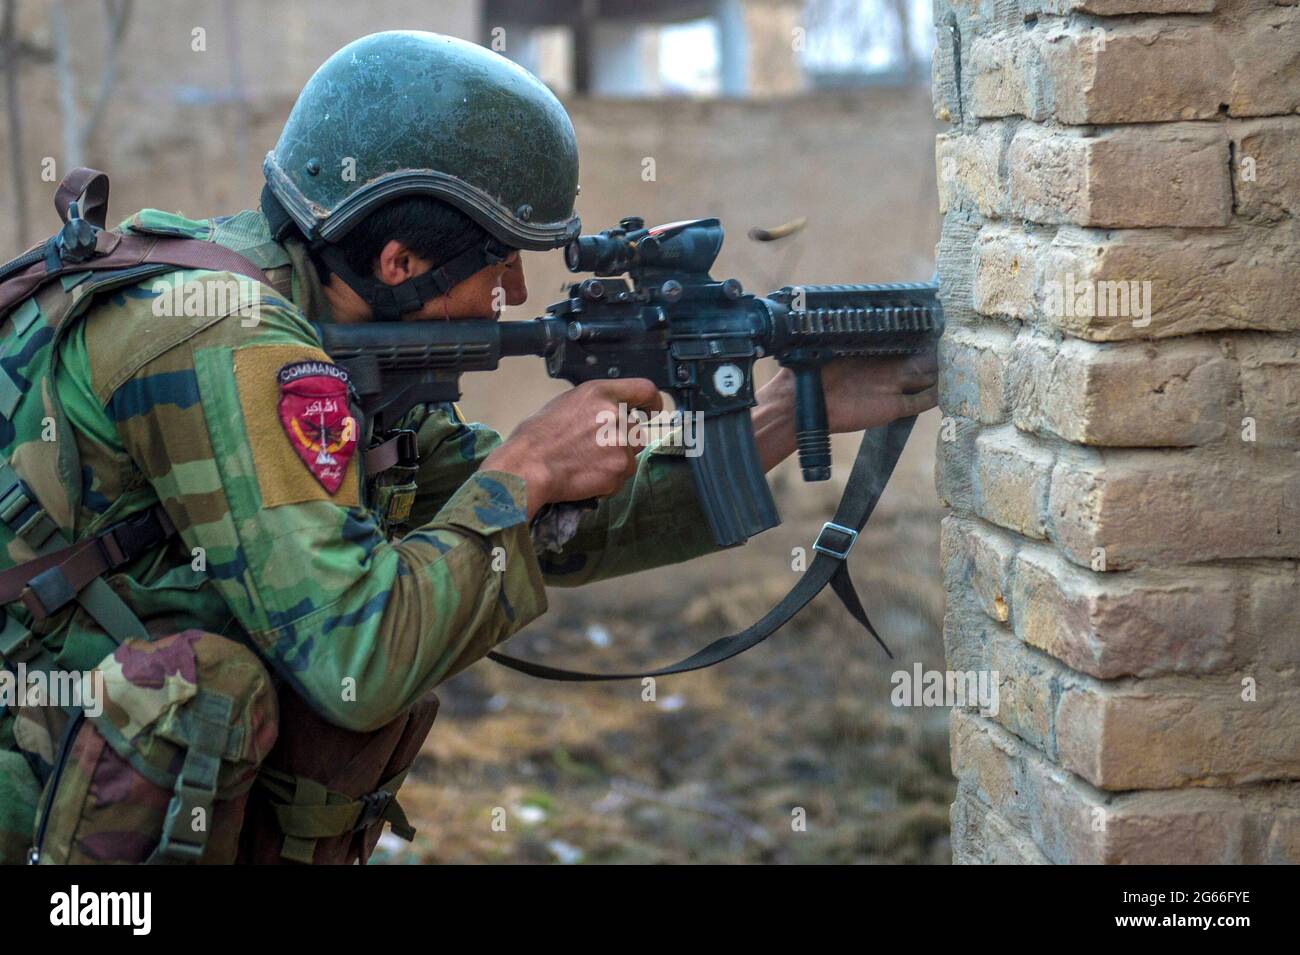 SUJANI, AFGHANISTAN - 20 janv. 2018 - une 10e armée nationale afghane opérations spéciales Kandak Commando retourne le feu lors d'opérations offensives contre t Banque D'Images